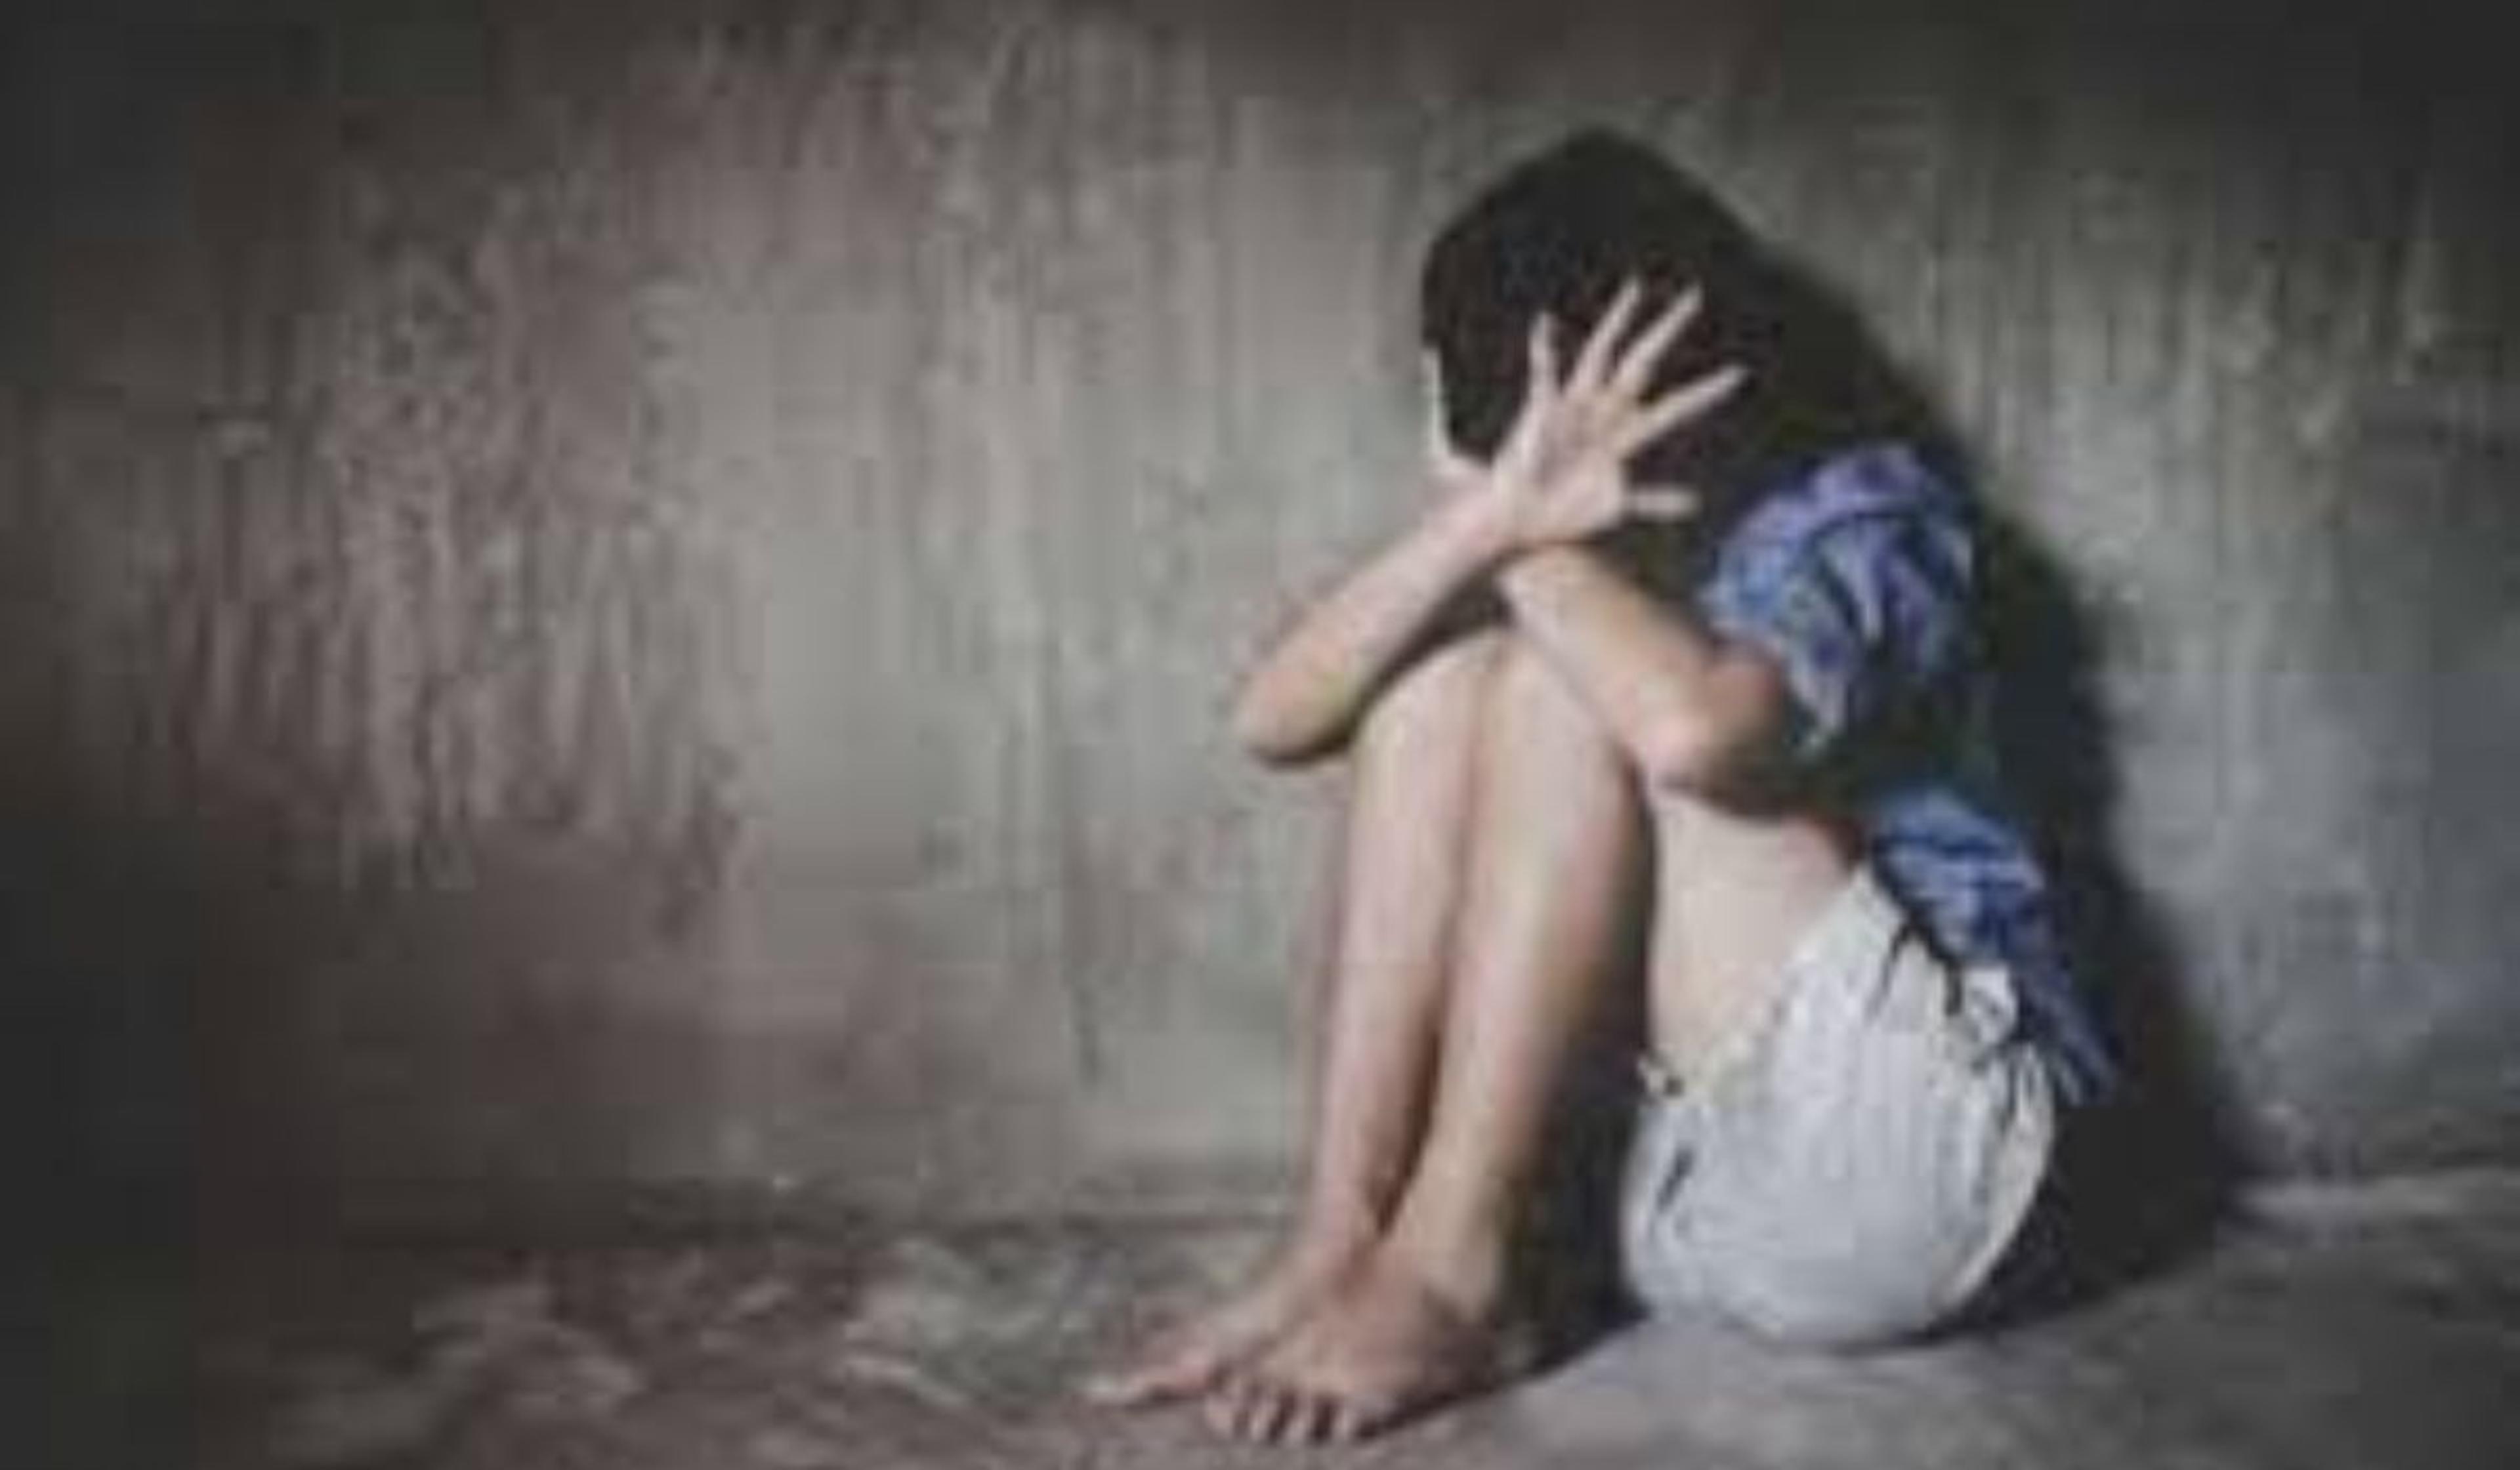 Rape in Bulandshahr: बुलंदशहर में पार्टी के बाद नशे की हालत में युवती से रेप,
सोशल मीडिया पर वीडियो वायरल